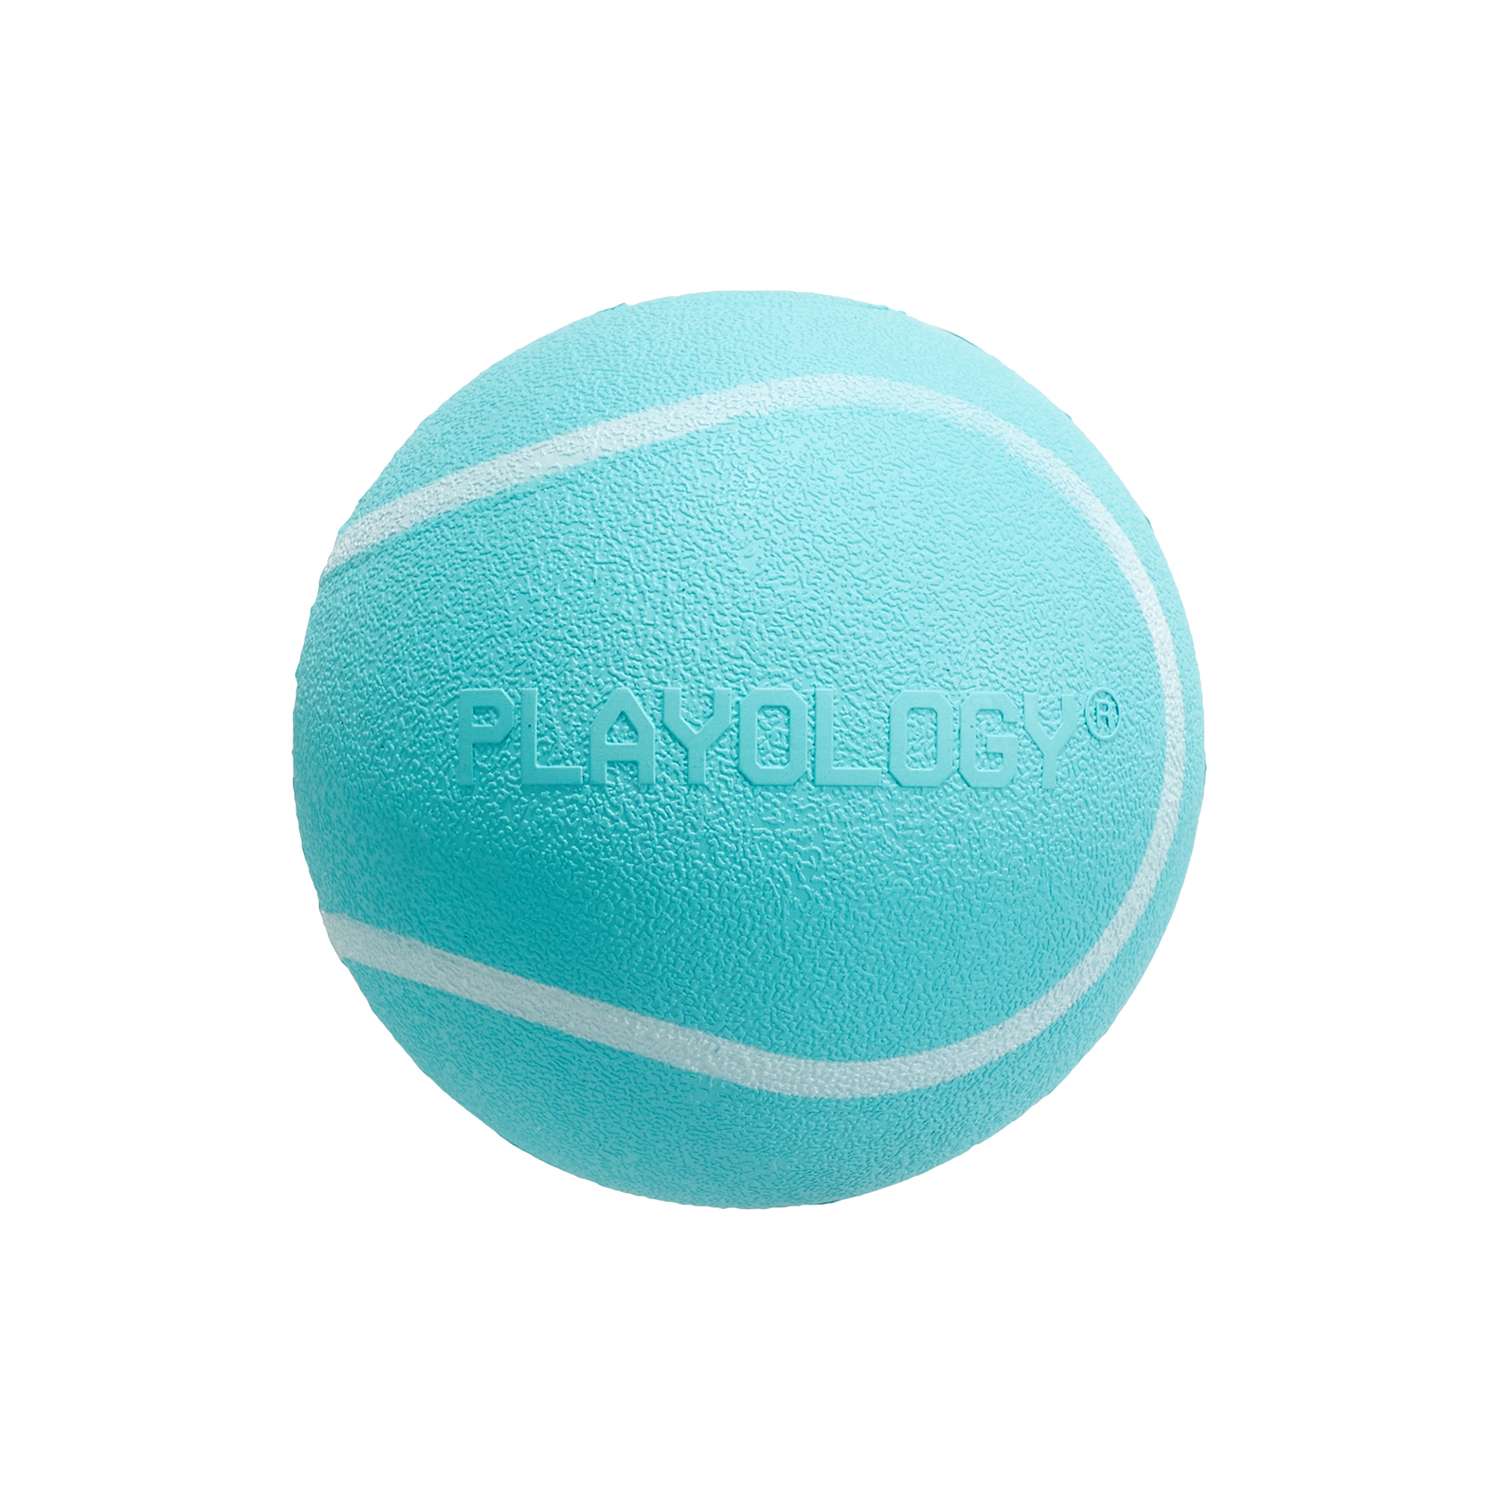 Жевательный мяч Playology SQUEAKY CHEW BALL 6 см для собак мелких и средних пород с пищалкой и с ароматом арахиса, цвет голубой